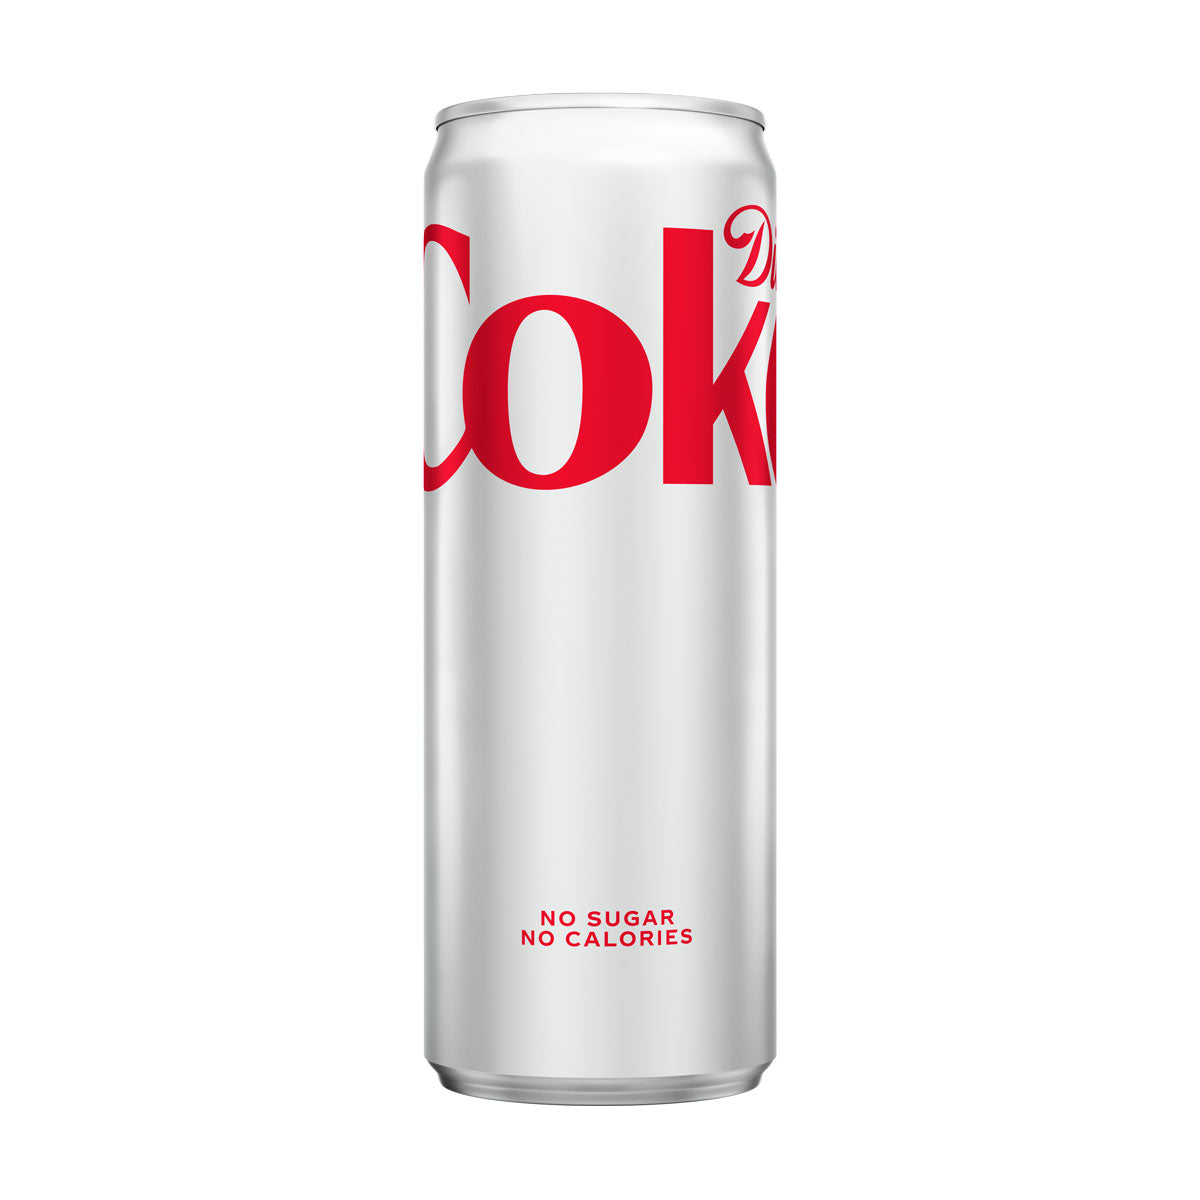 Coca-Cola Diet Coke Slim Can 12 OZ